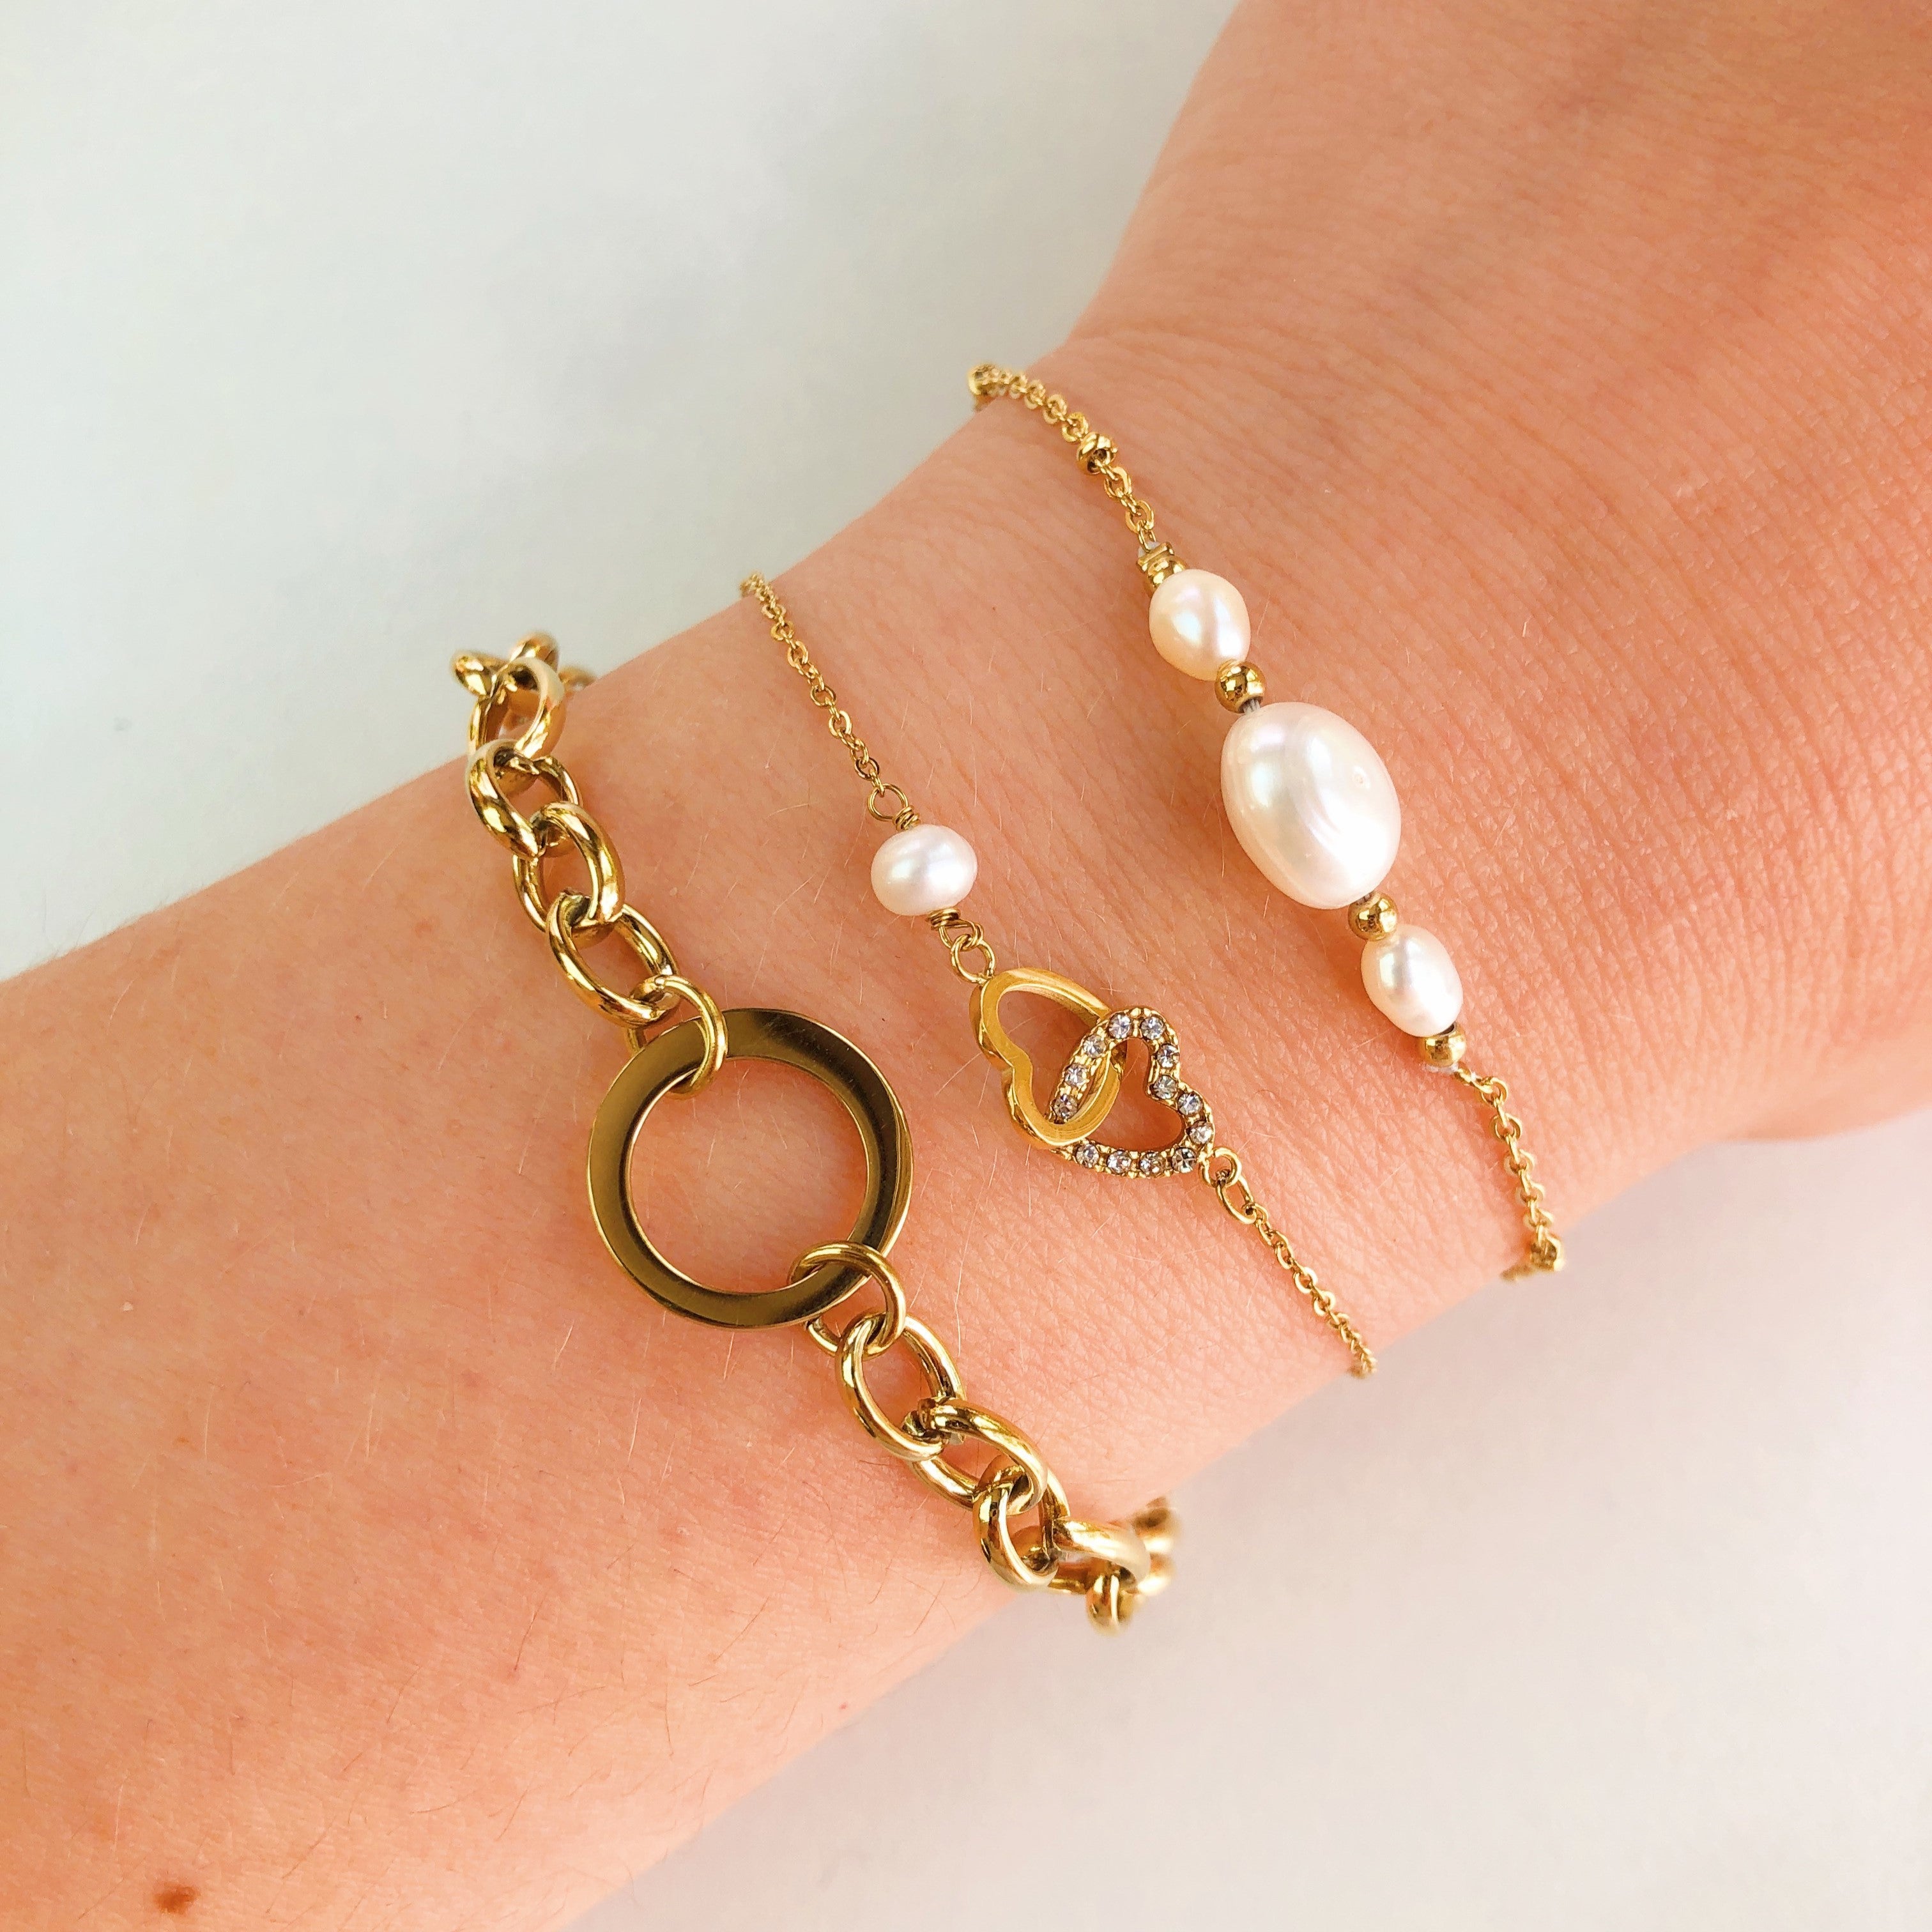 Triple pearl bracelet